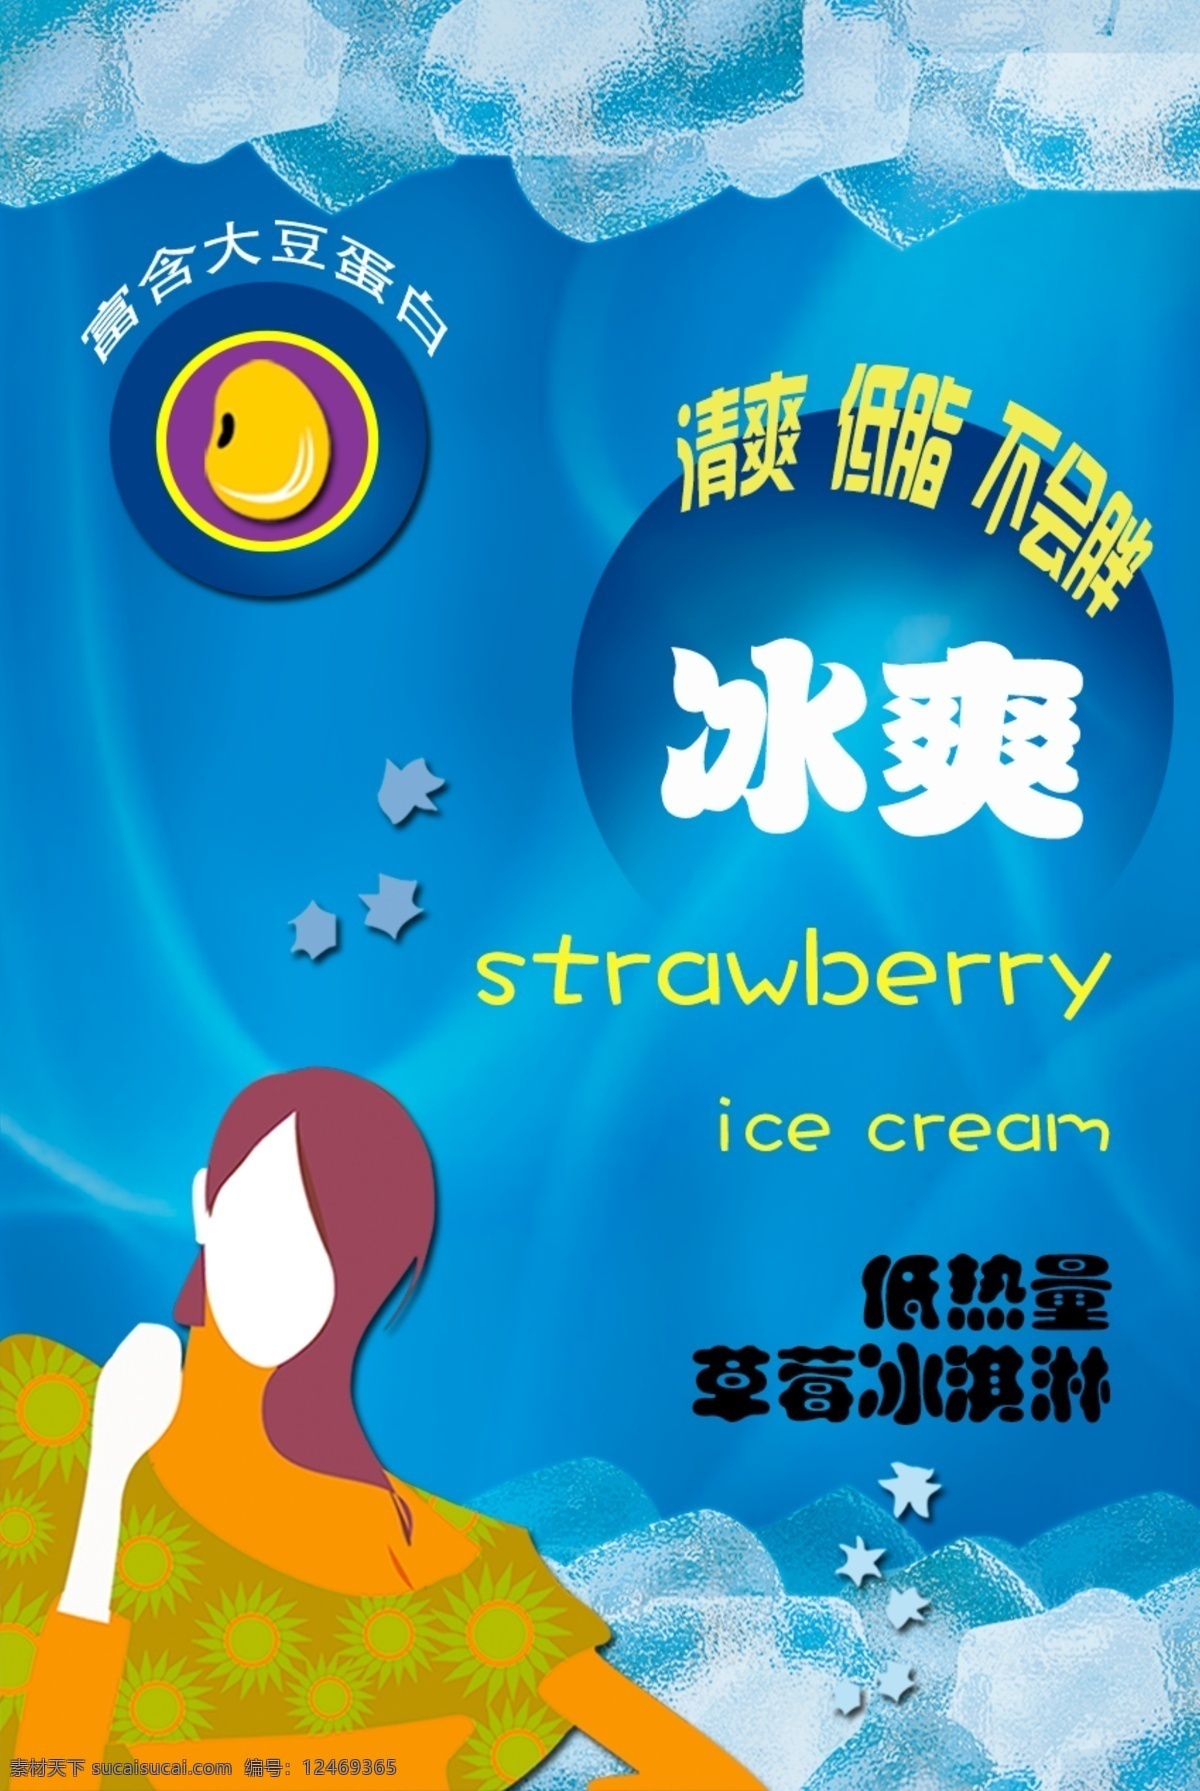 冰淇淋 广告 宣传单 冰淇淋图片 冰爽 彩页 广告宣传单 宣传海报 dm